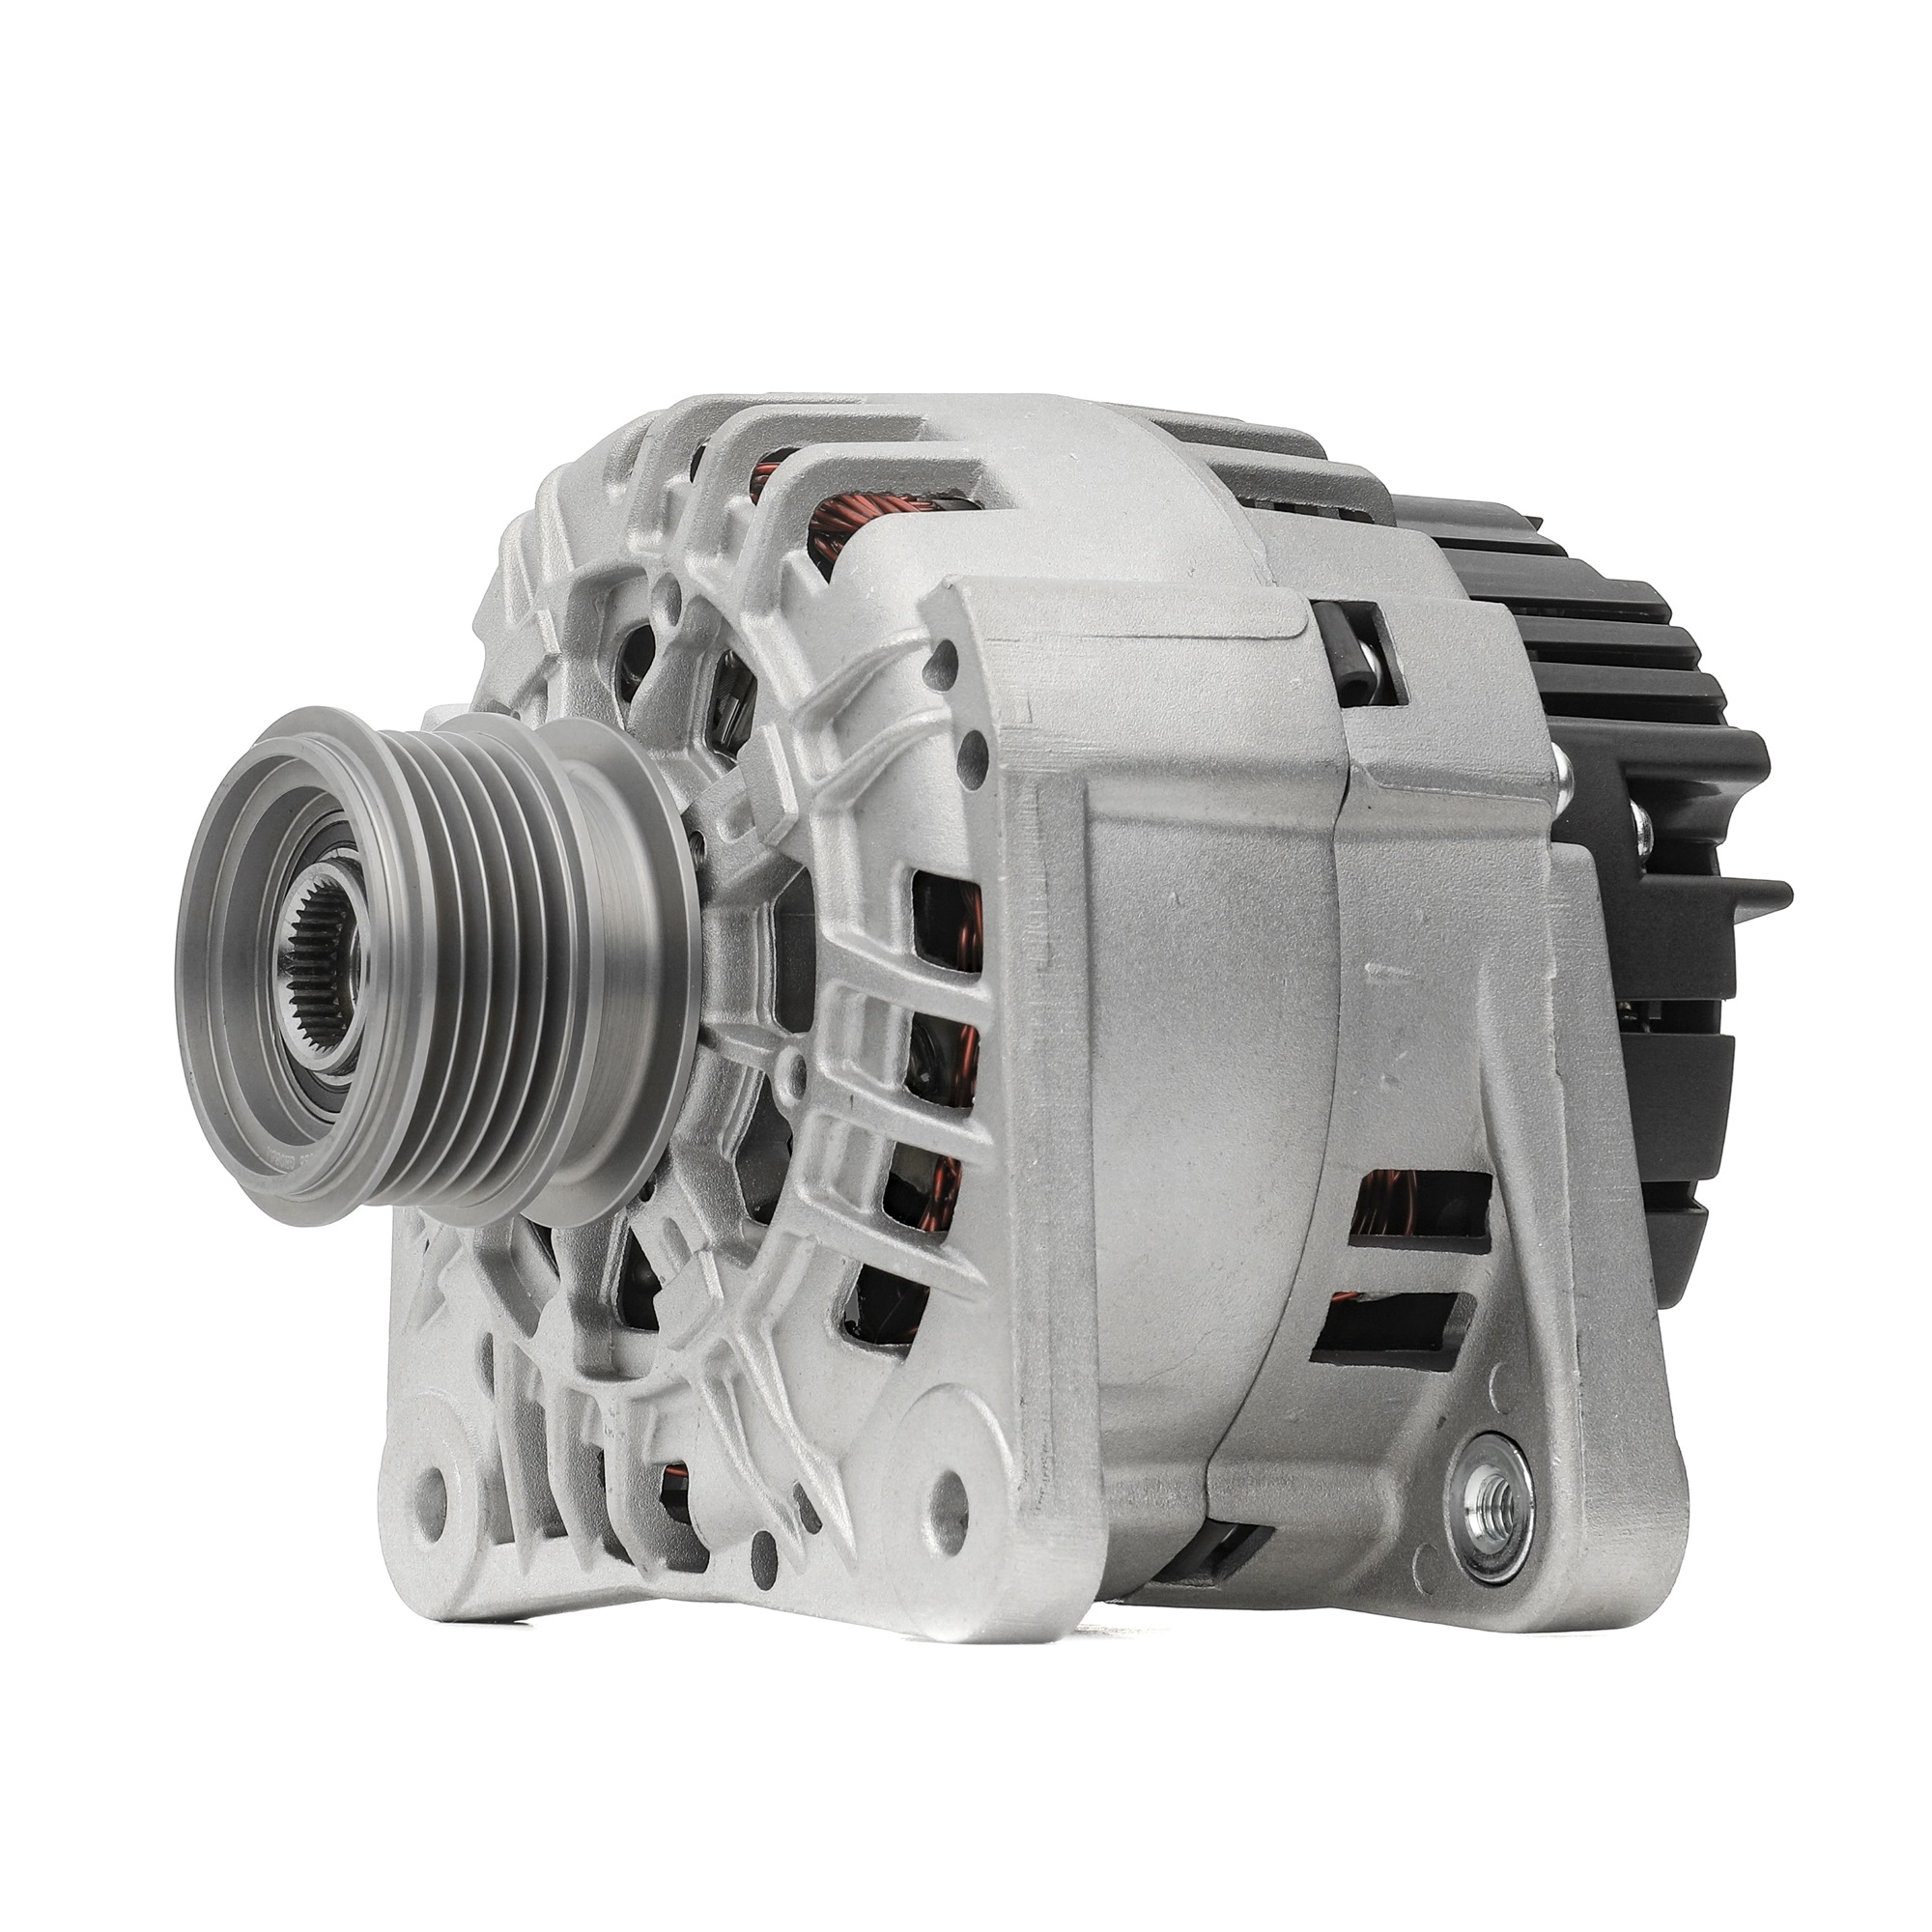 STARK SKGN-03221439 Alternator 14V, 125A, L, PL324, excl. vacuum pump, Ø 54 mm, with integrated regulator